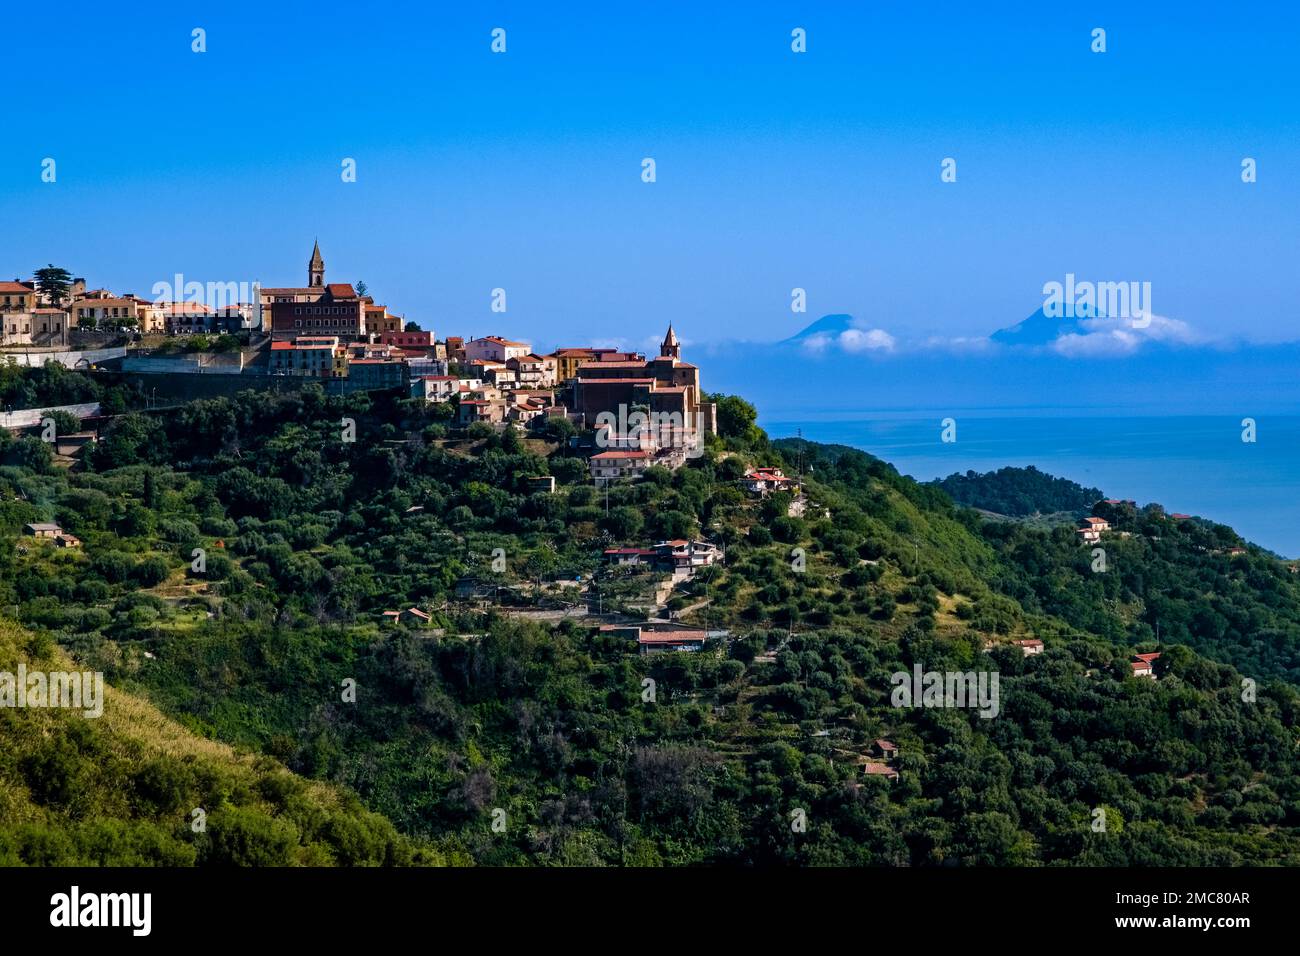 Blick auf die Häuser der kleinen Stadt Naso, hoch oben auf einem Hügel, die Lipari-Inseln in der Ferne. Stockfoto